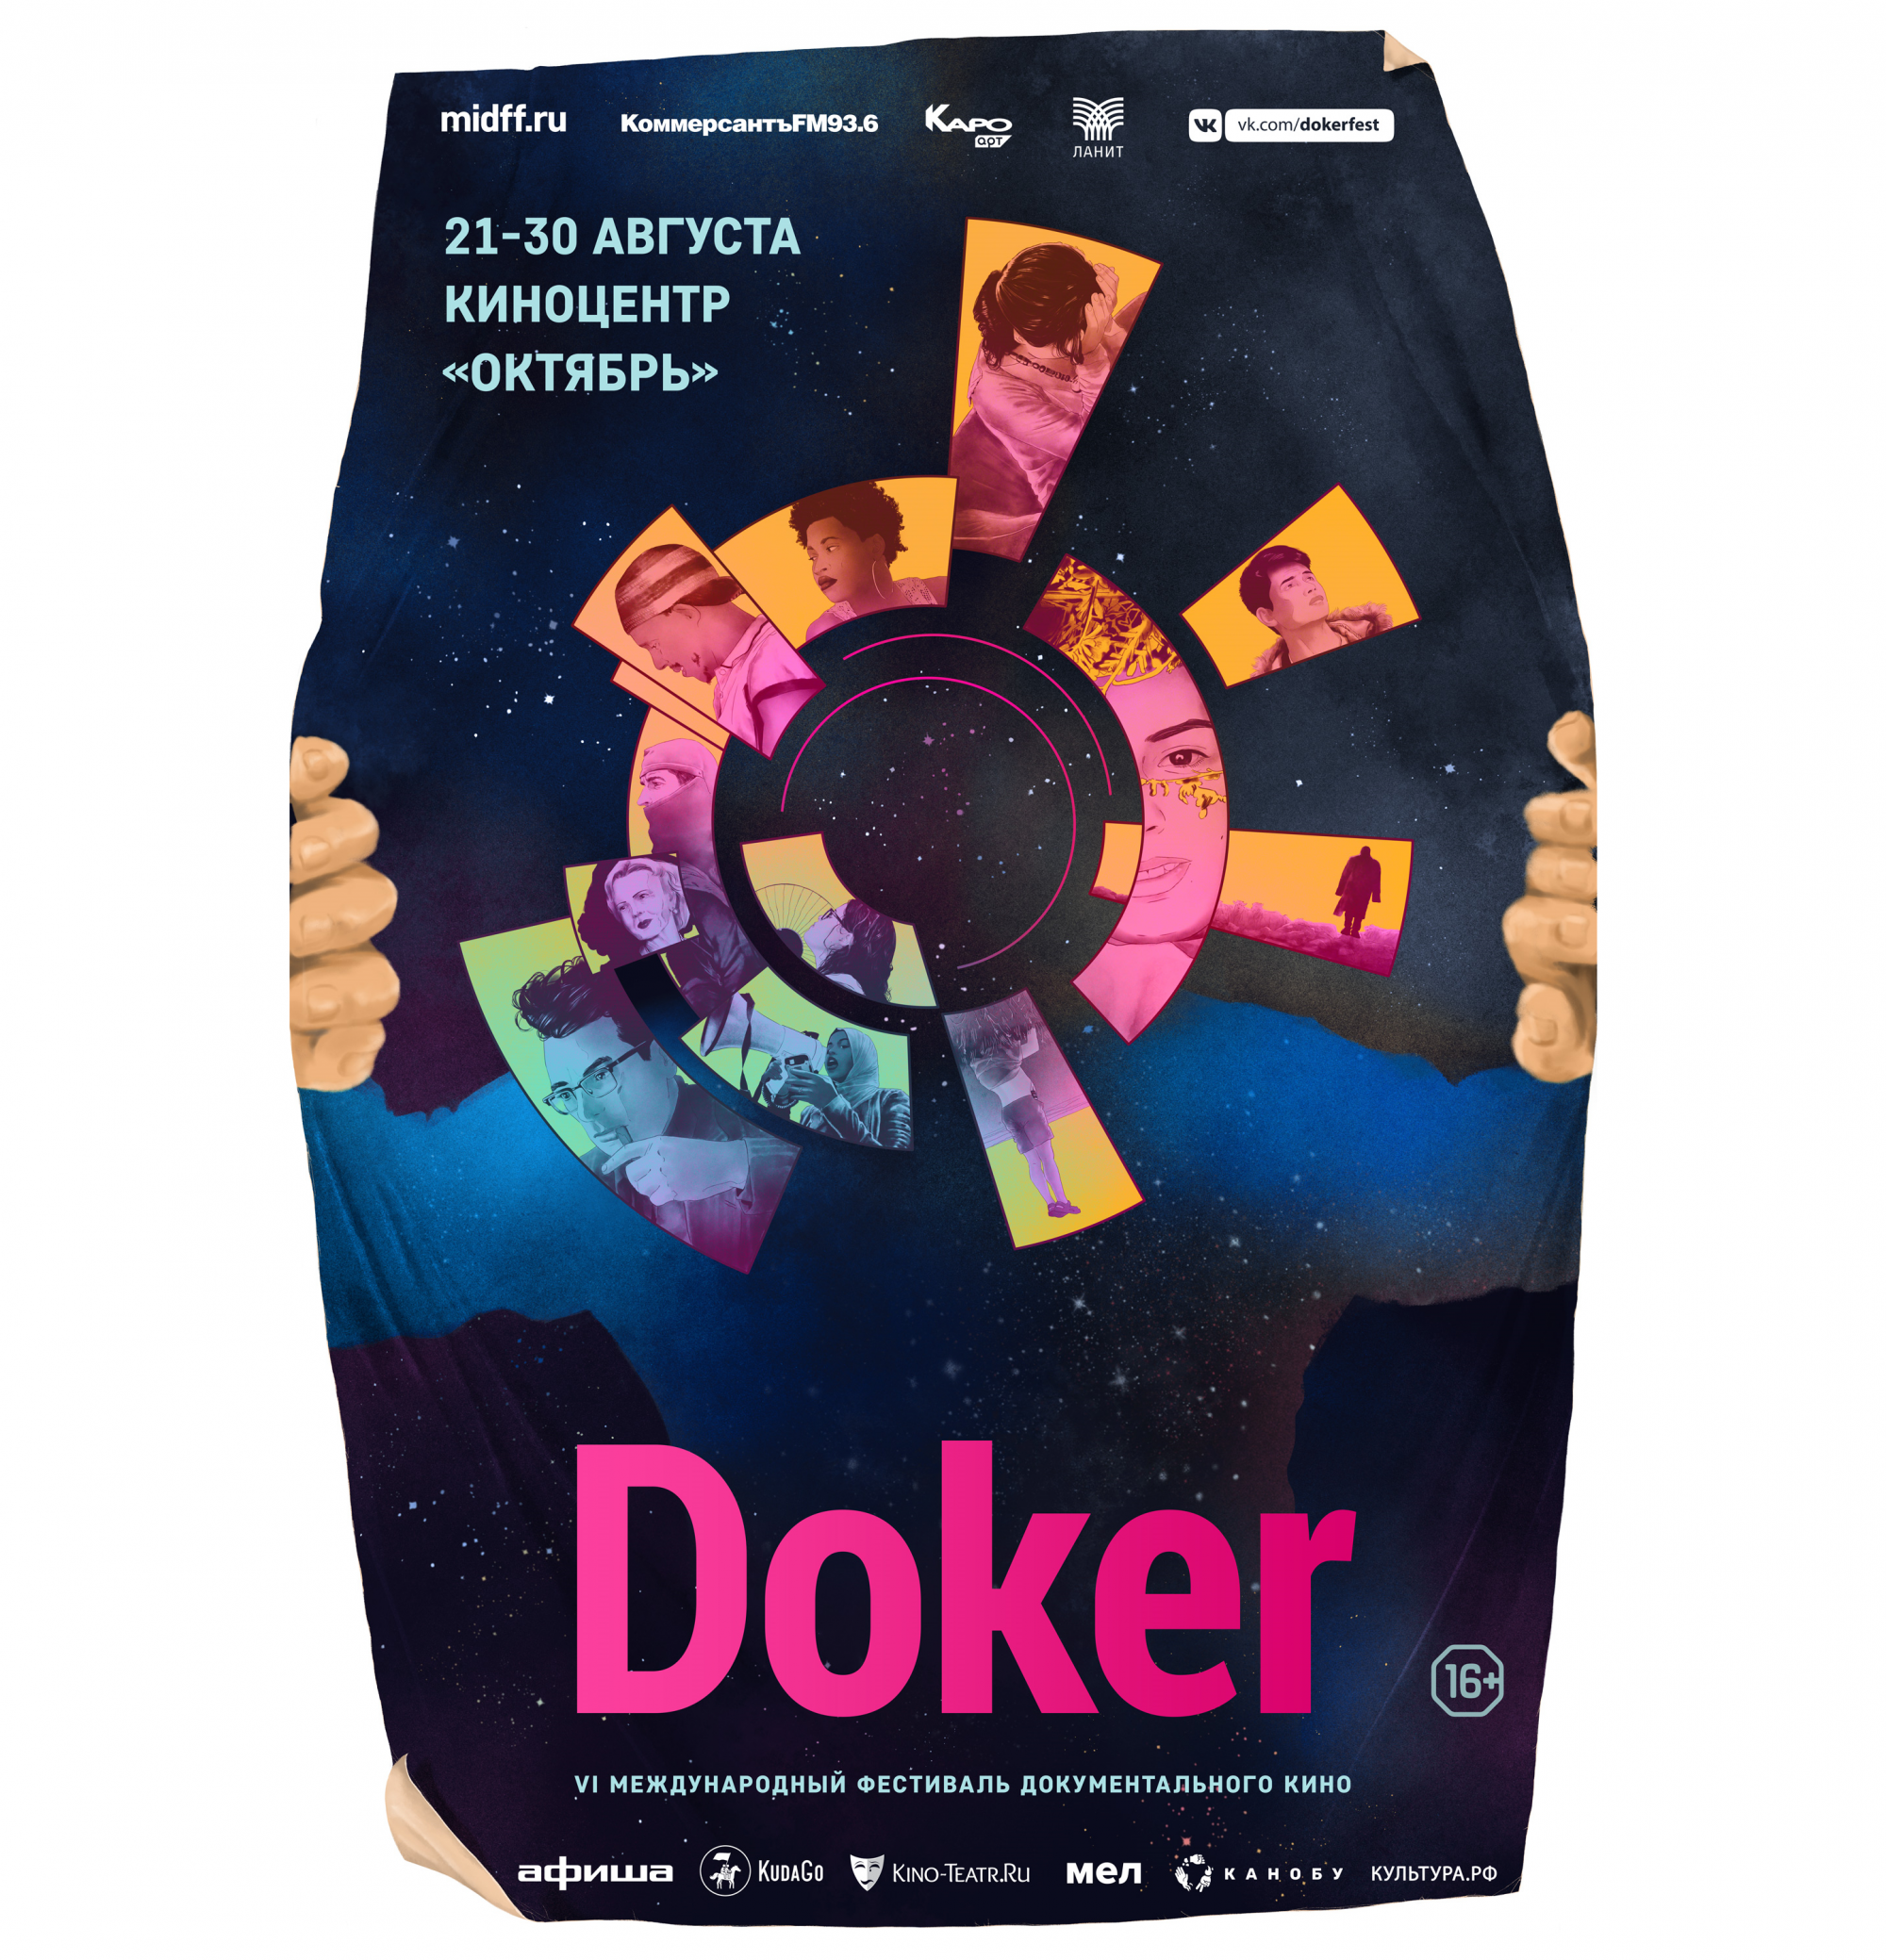 В Москве начинается Международный фестиваль документального кино «Докер»